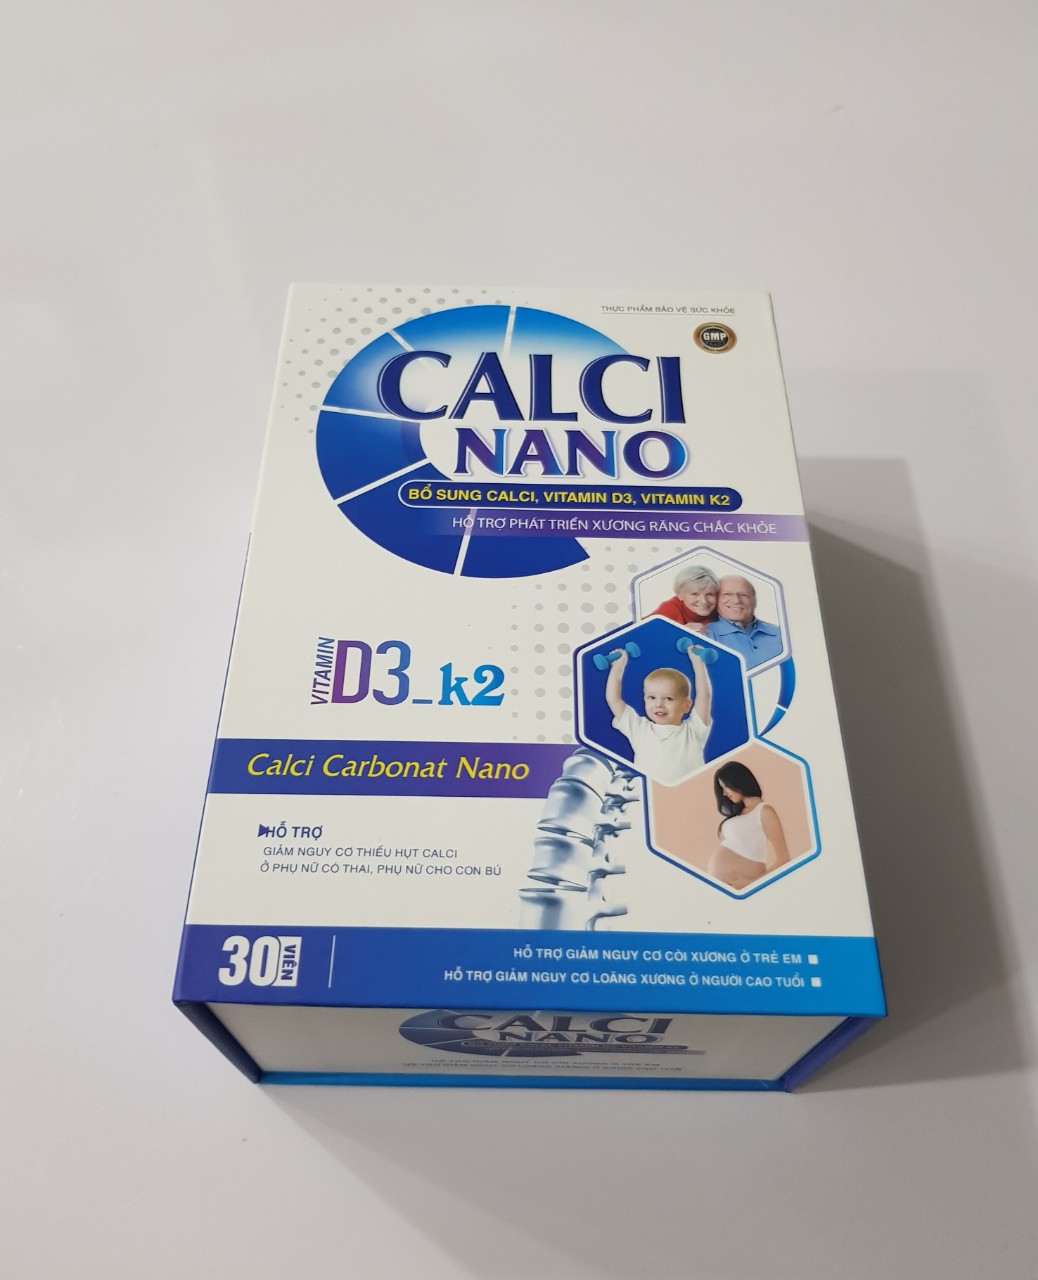 Viên Calci nano: Bổ sung calci, vitamin D3, vitamin K2, hỗ trợ phát triển xương răng chắc khoẻ.